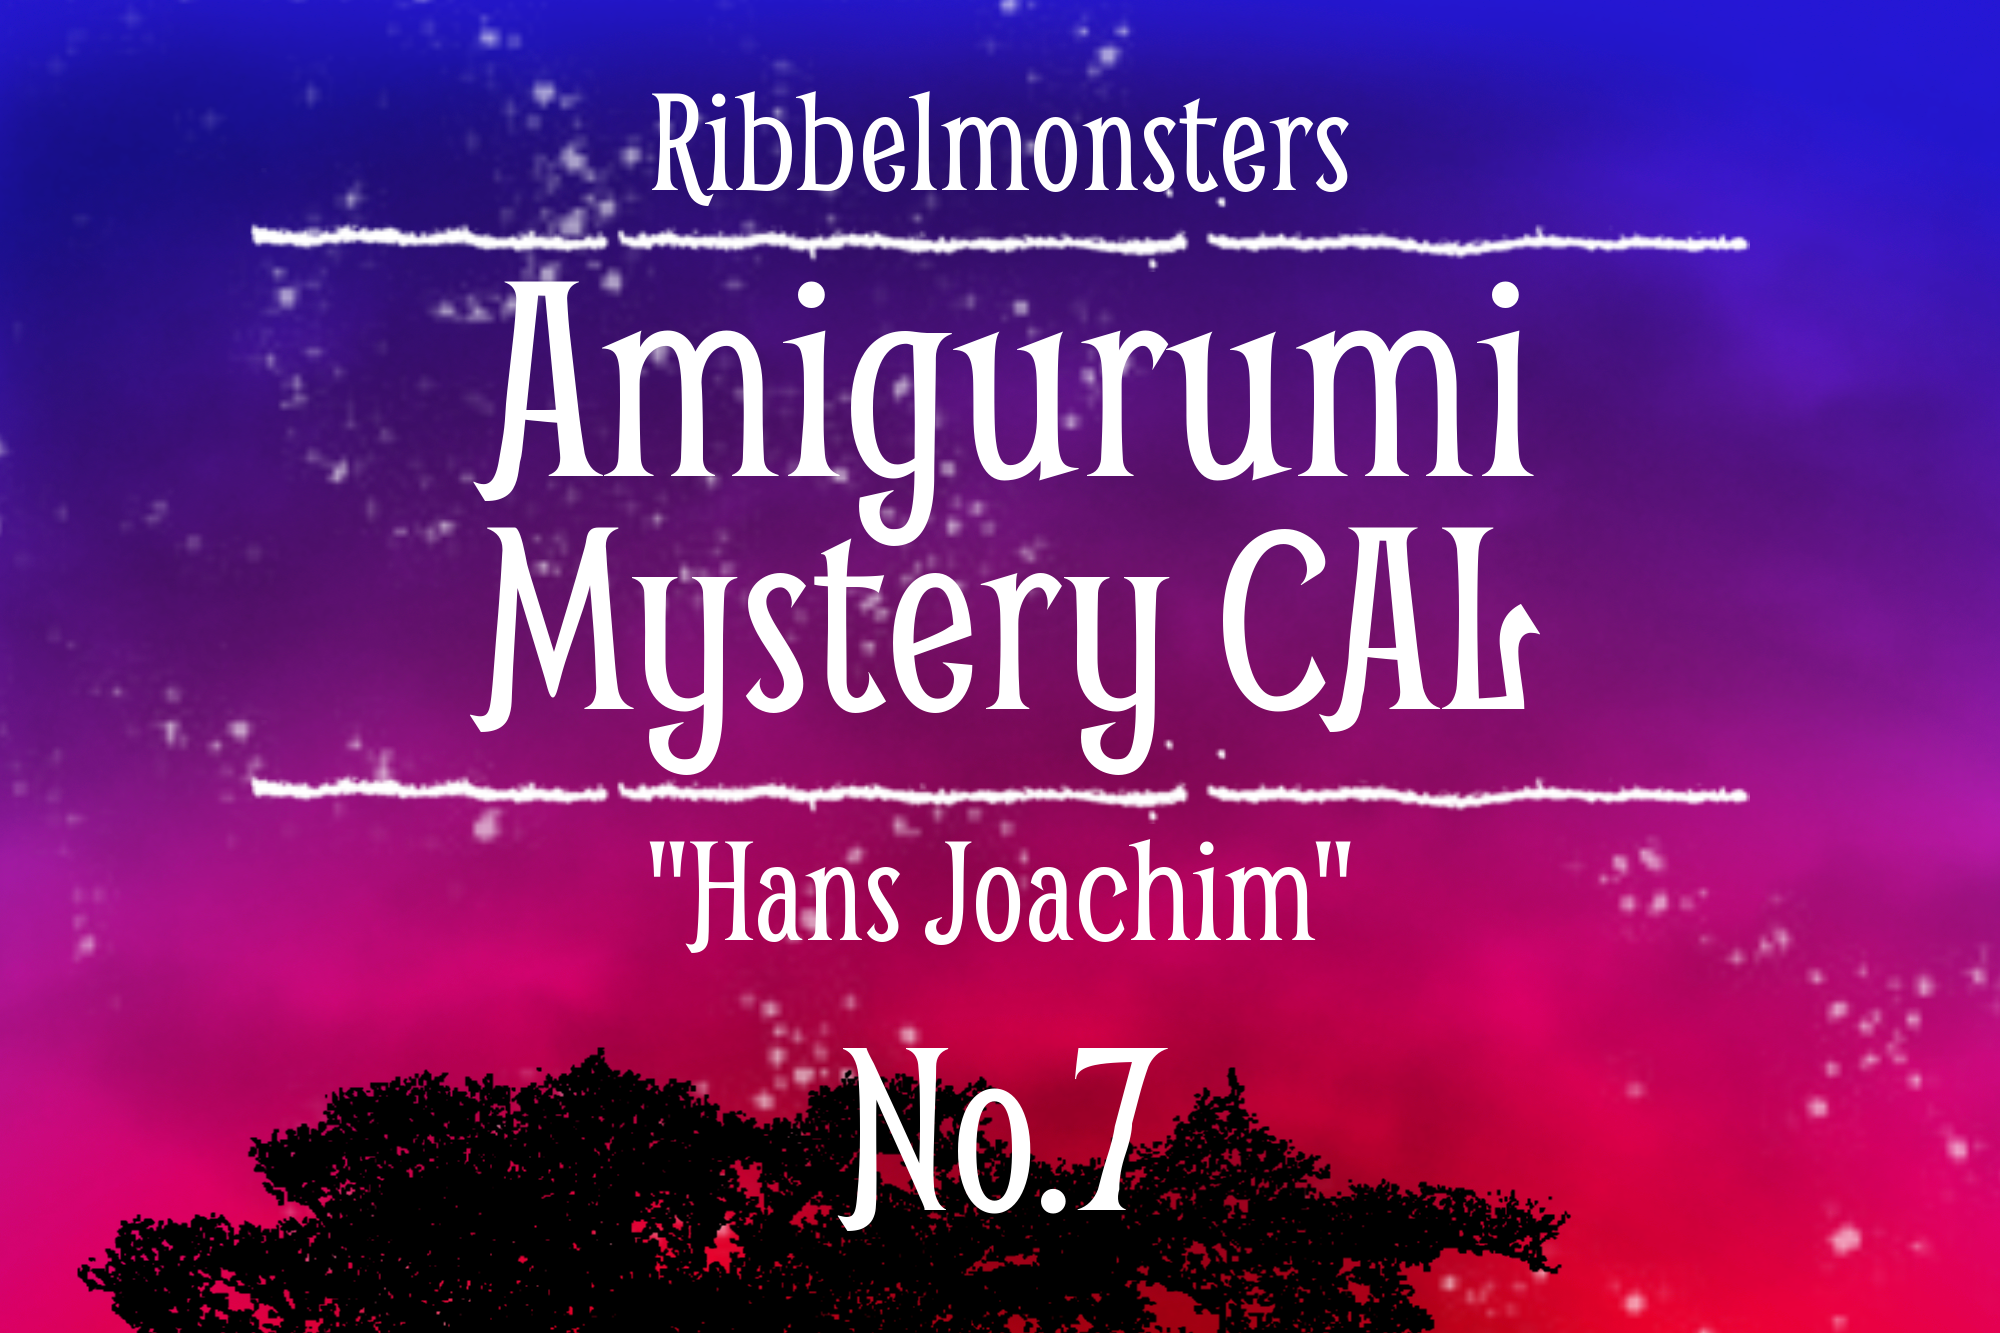 Amigurumi Mystery CAL – “Hans Joachim” – Part 7